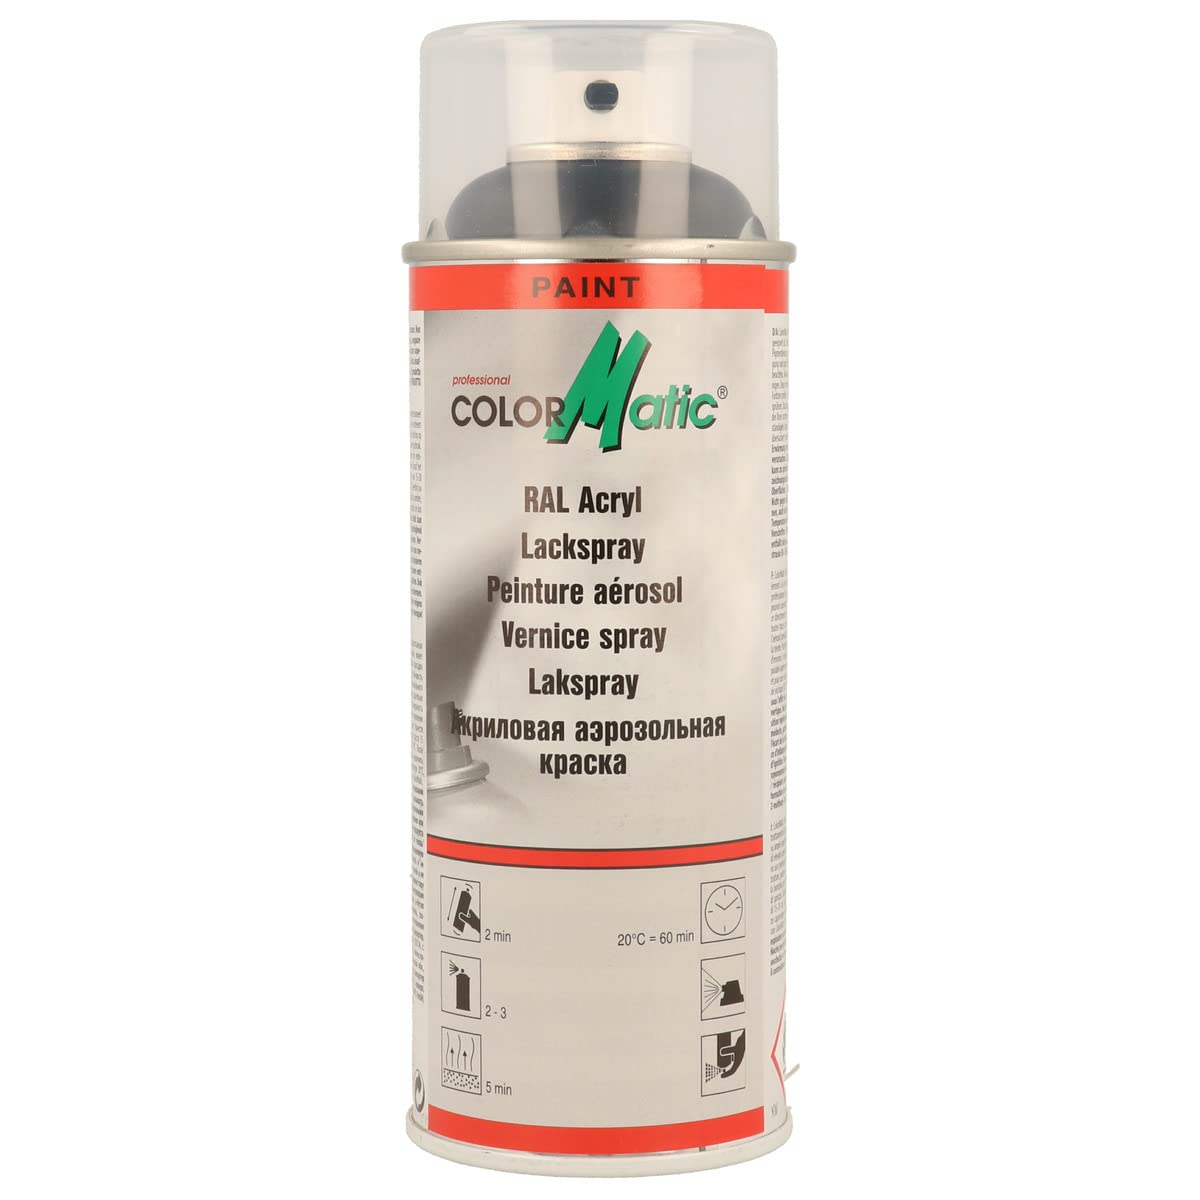 ColorMatic 856655 RAL-Acryl Lackspray RAL 9005 tiefschwarz matt 400 ml von COLORMATIC